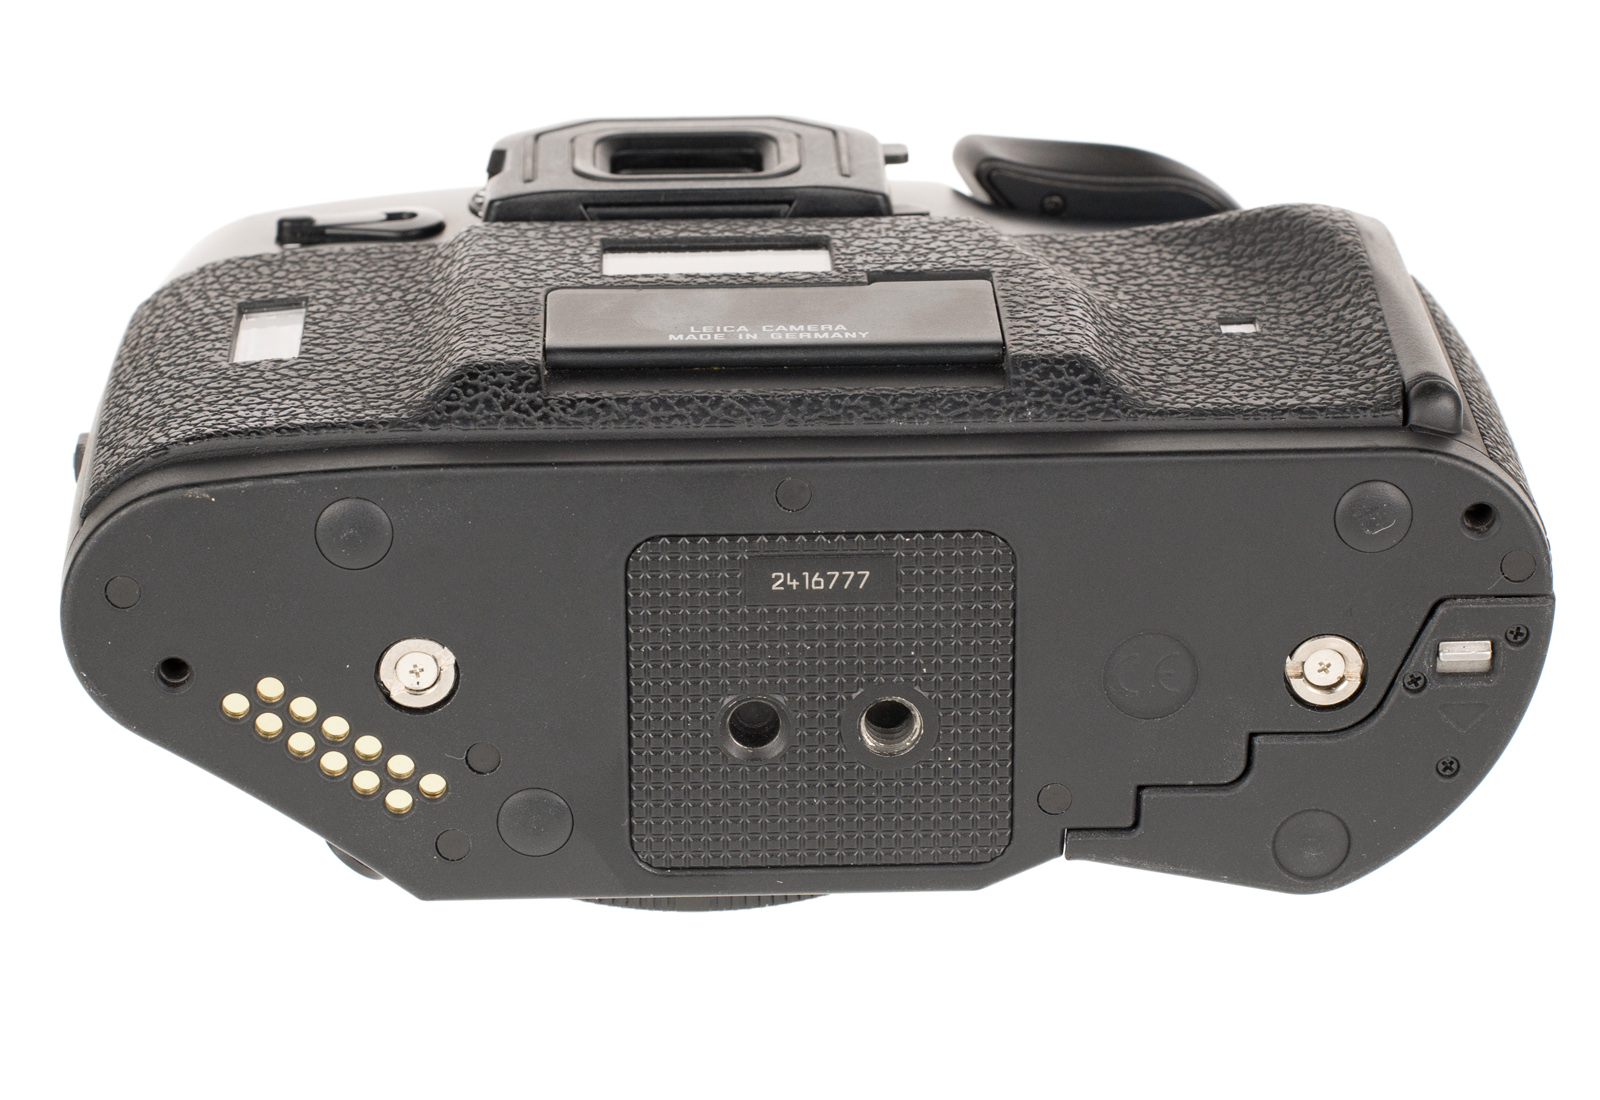 Leica R8, schwarz 10081